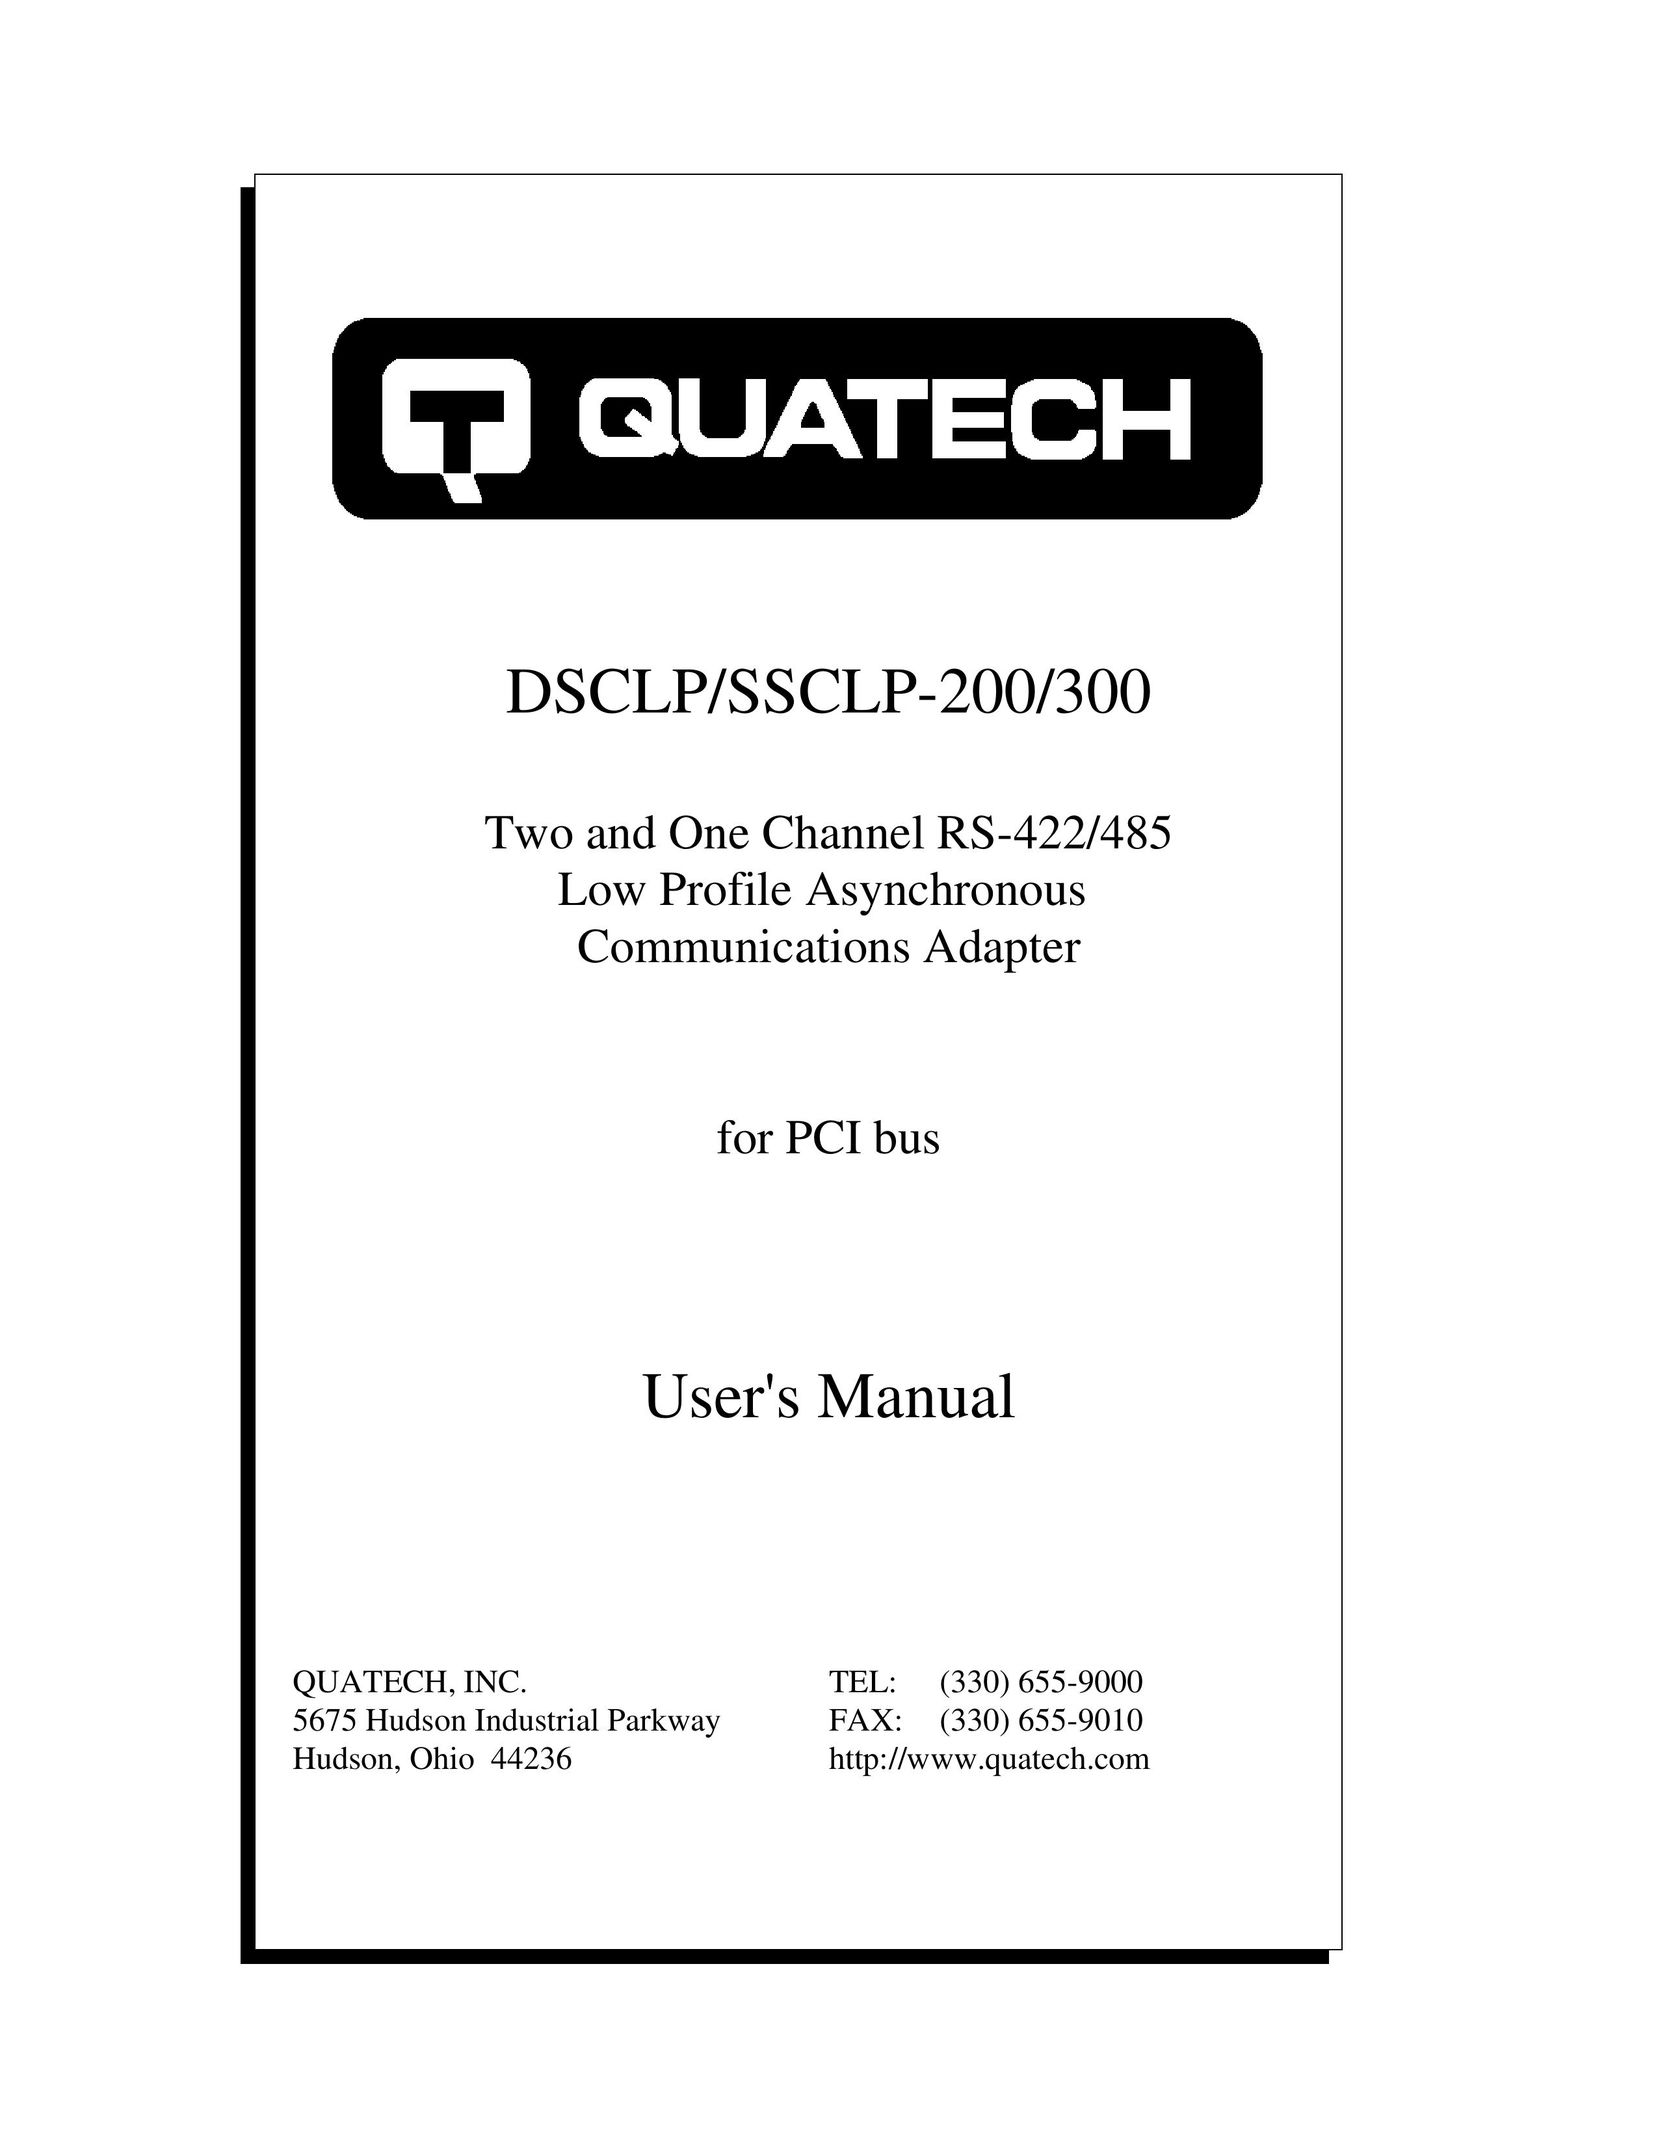 Quatech DSCLP-200 Network Card User Manual